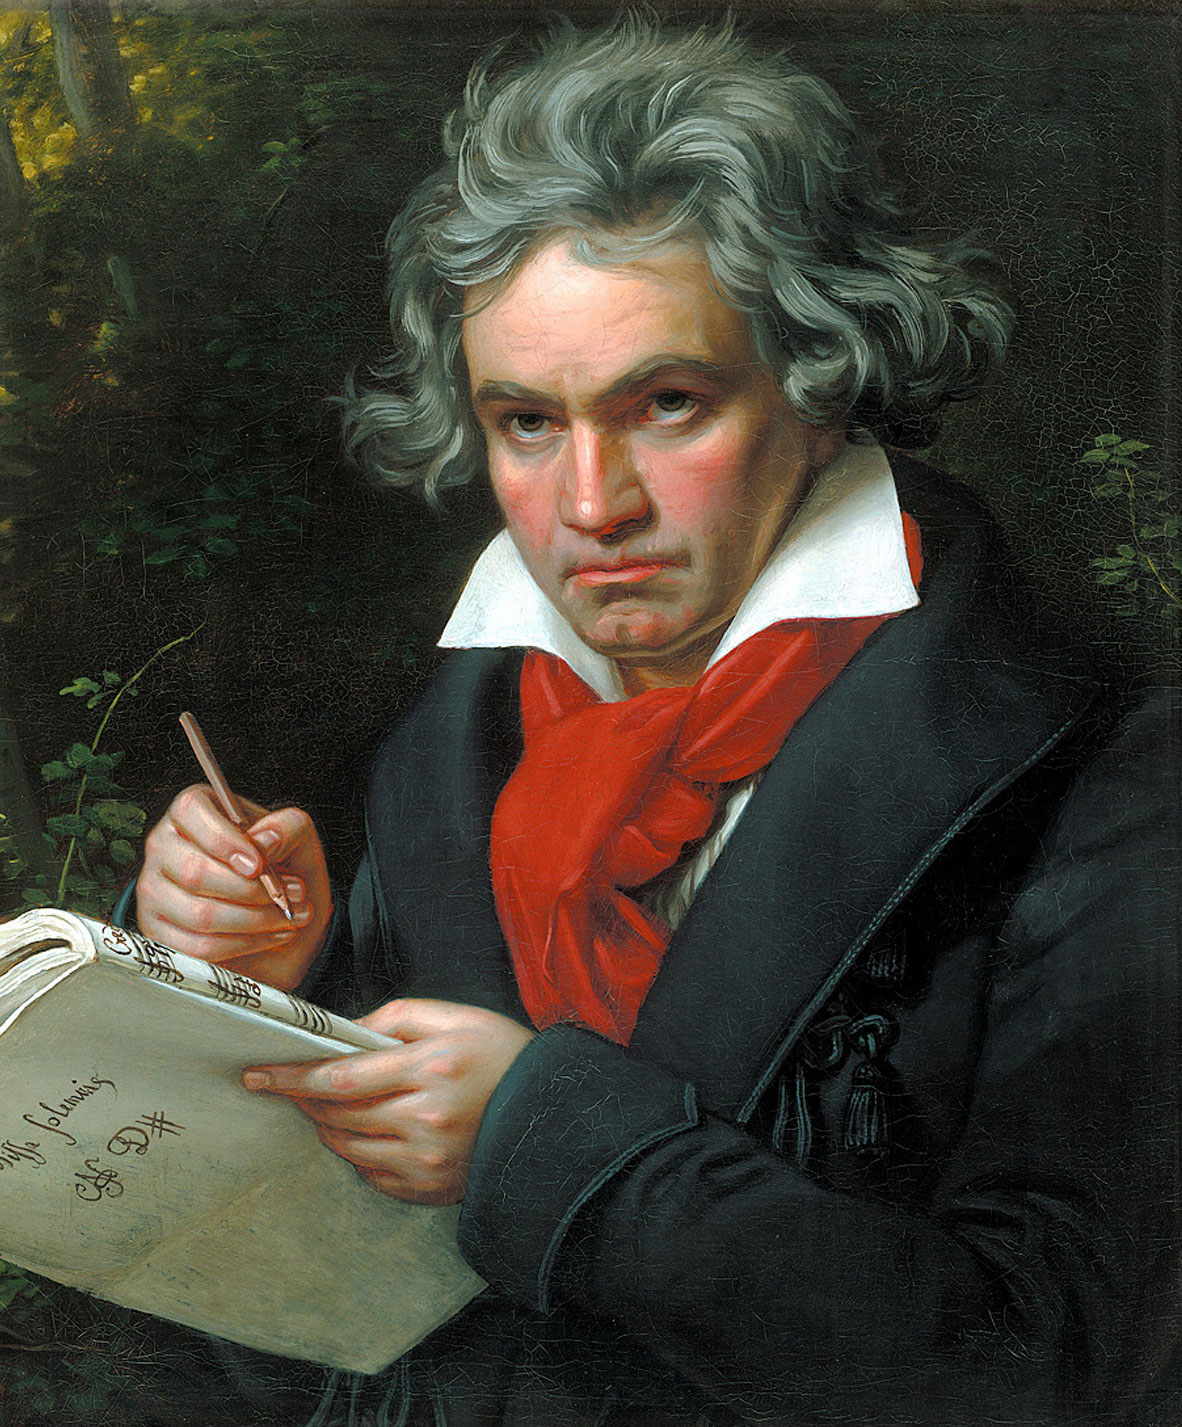 https://arkiv.klassiskmusikk.com/wp-content/uploads/2018/12/Beethoven-foto-hele.jpg